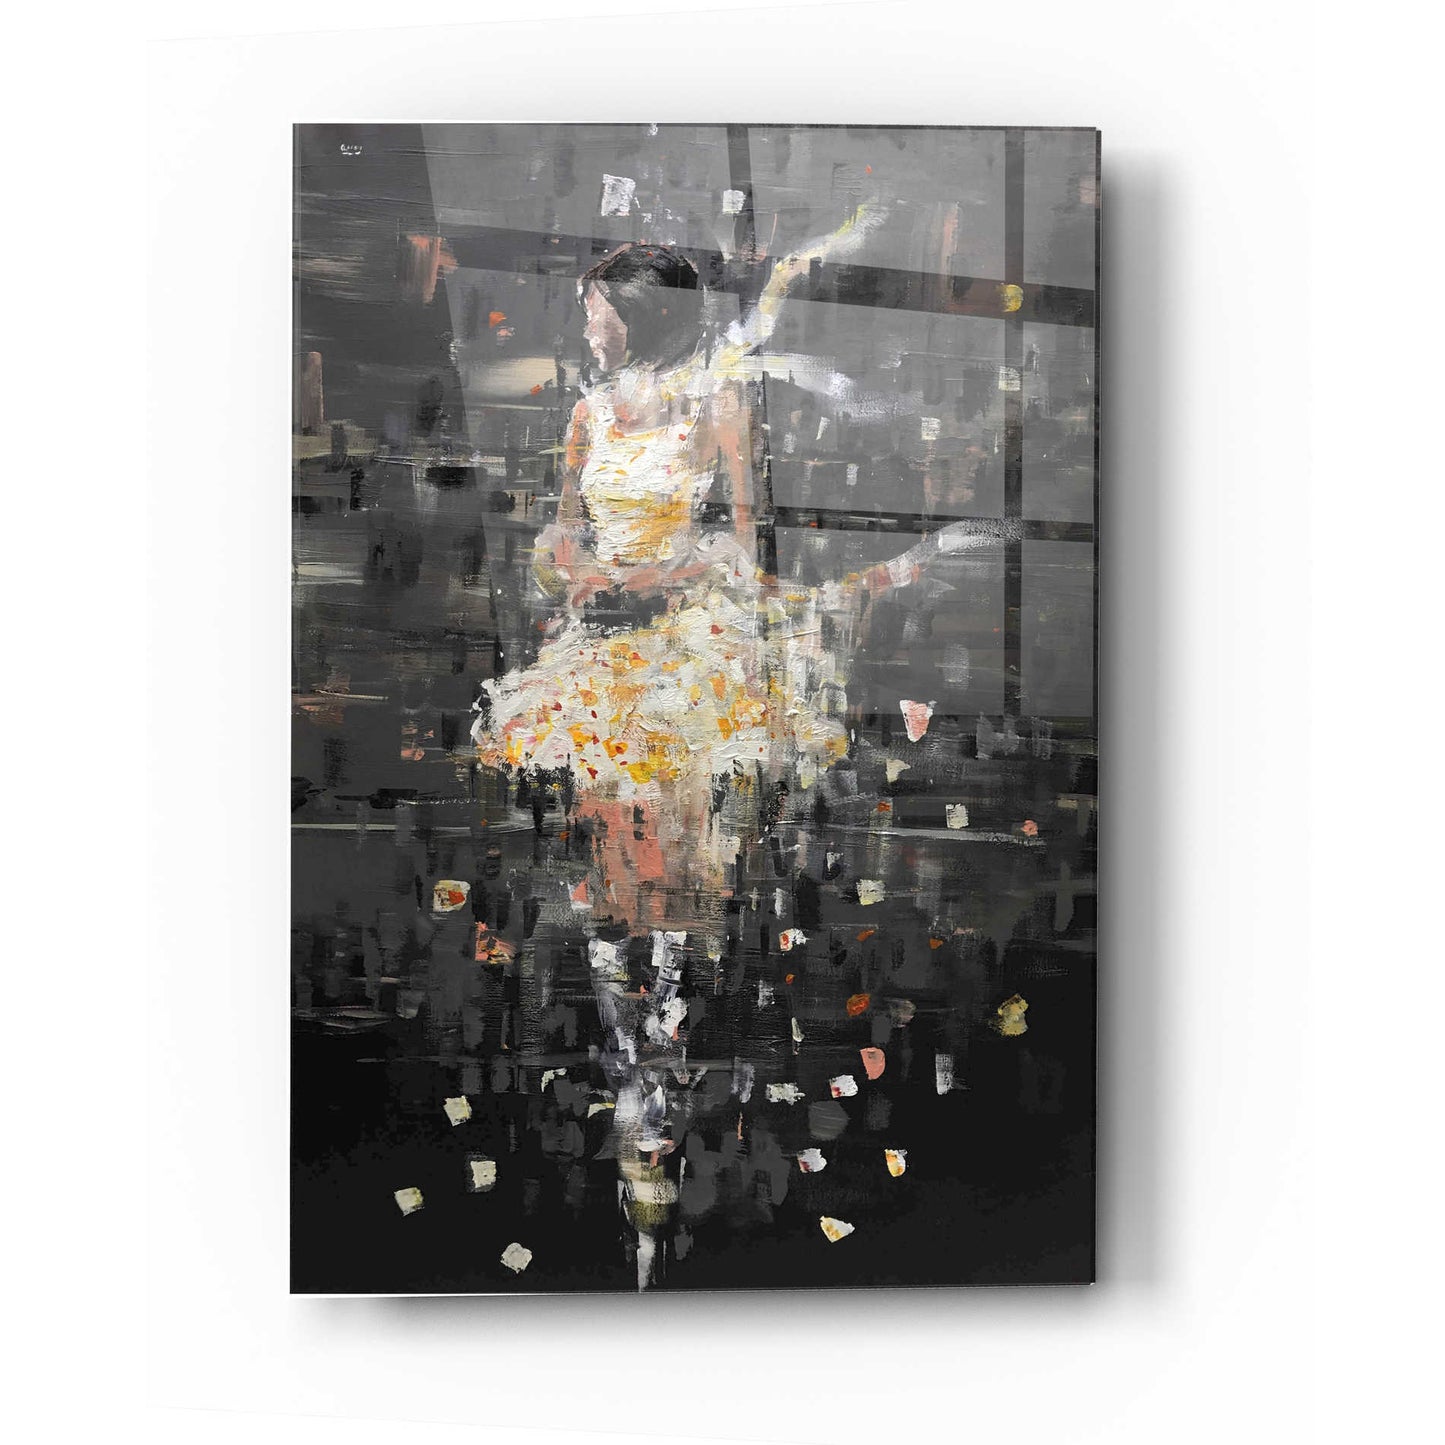 Epic Art 'She's Glowing' by Oscar Alvarez Pardo, Acrylic Glass Wall Art,12x16